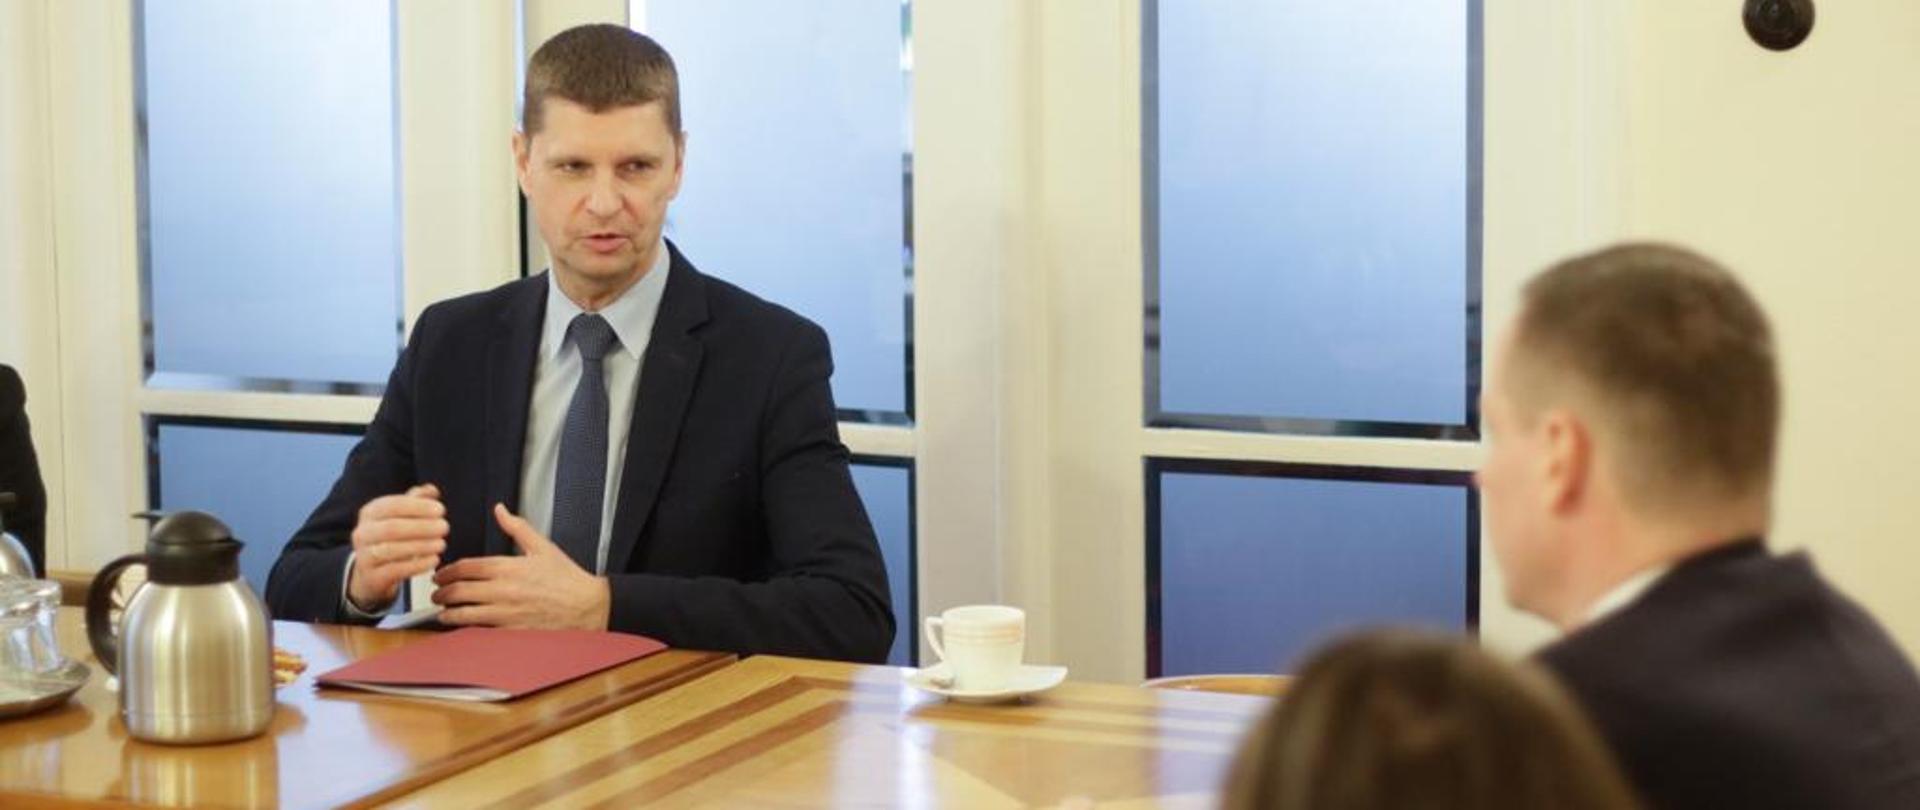 Wiceminister Dariusz Piontkowski siedzi przy stole i rozmawia z ambasadorem Andrejem Drobą, który siedzi po drugiej stronie stołu.